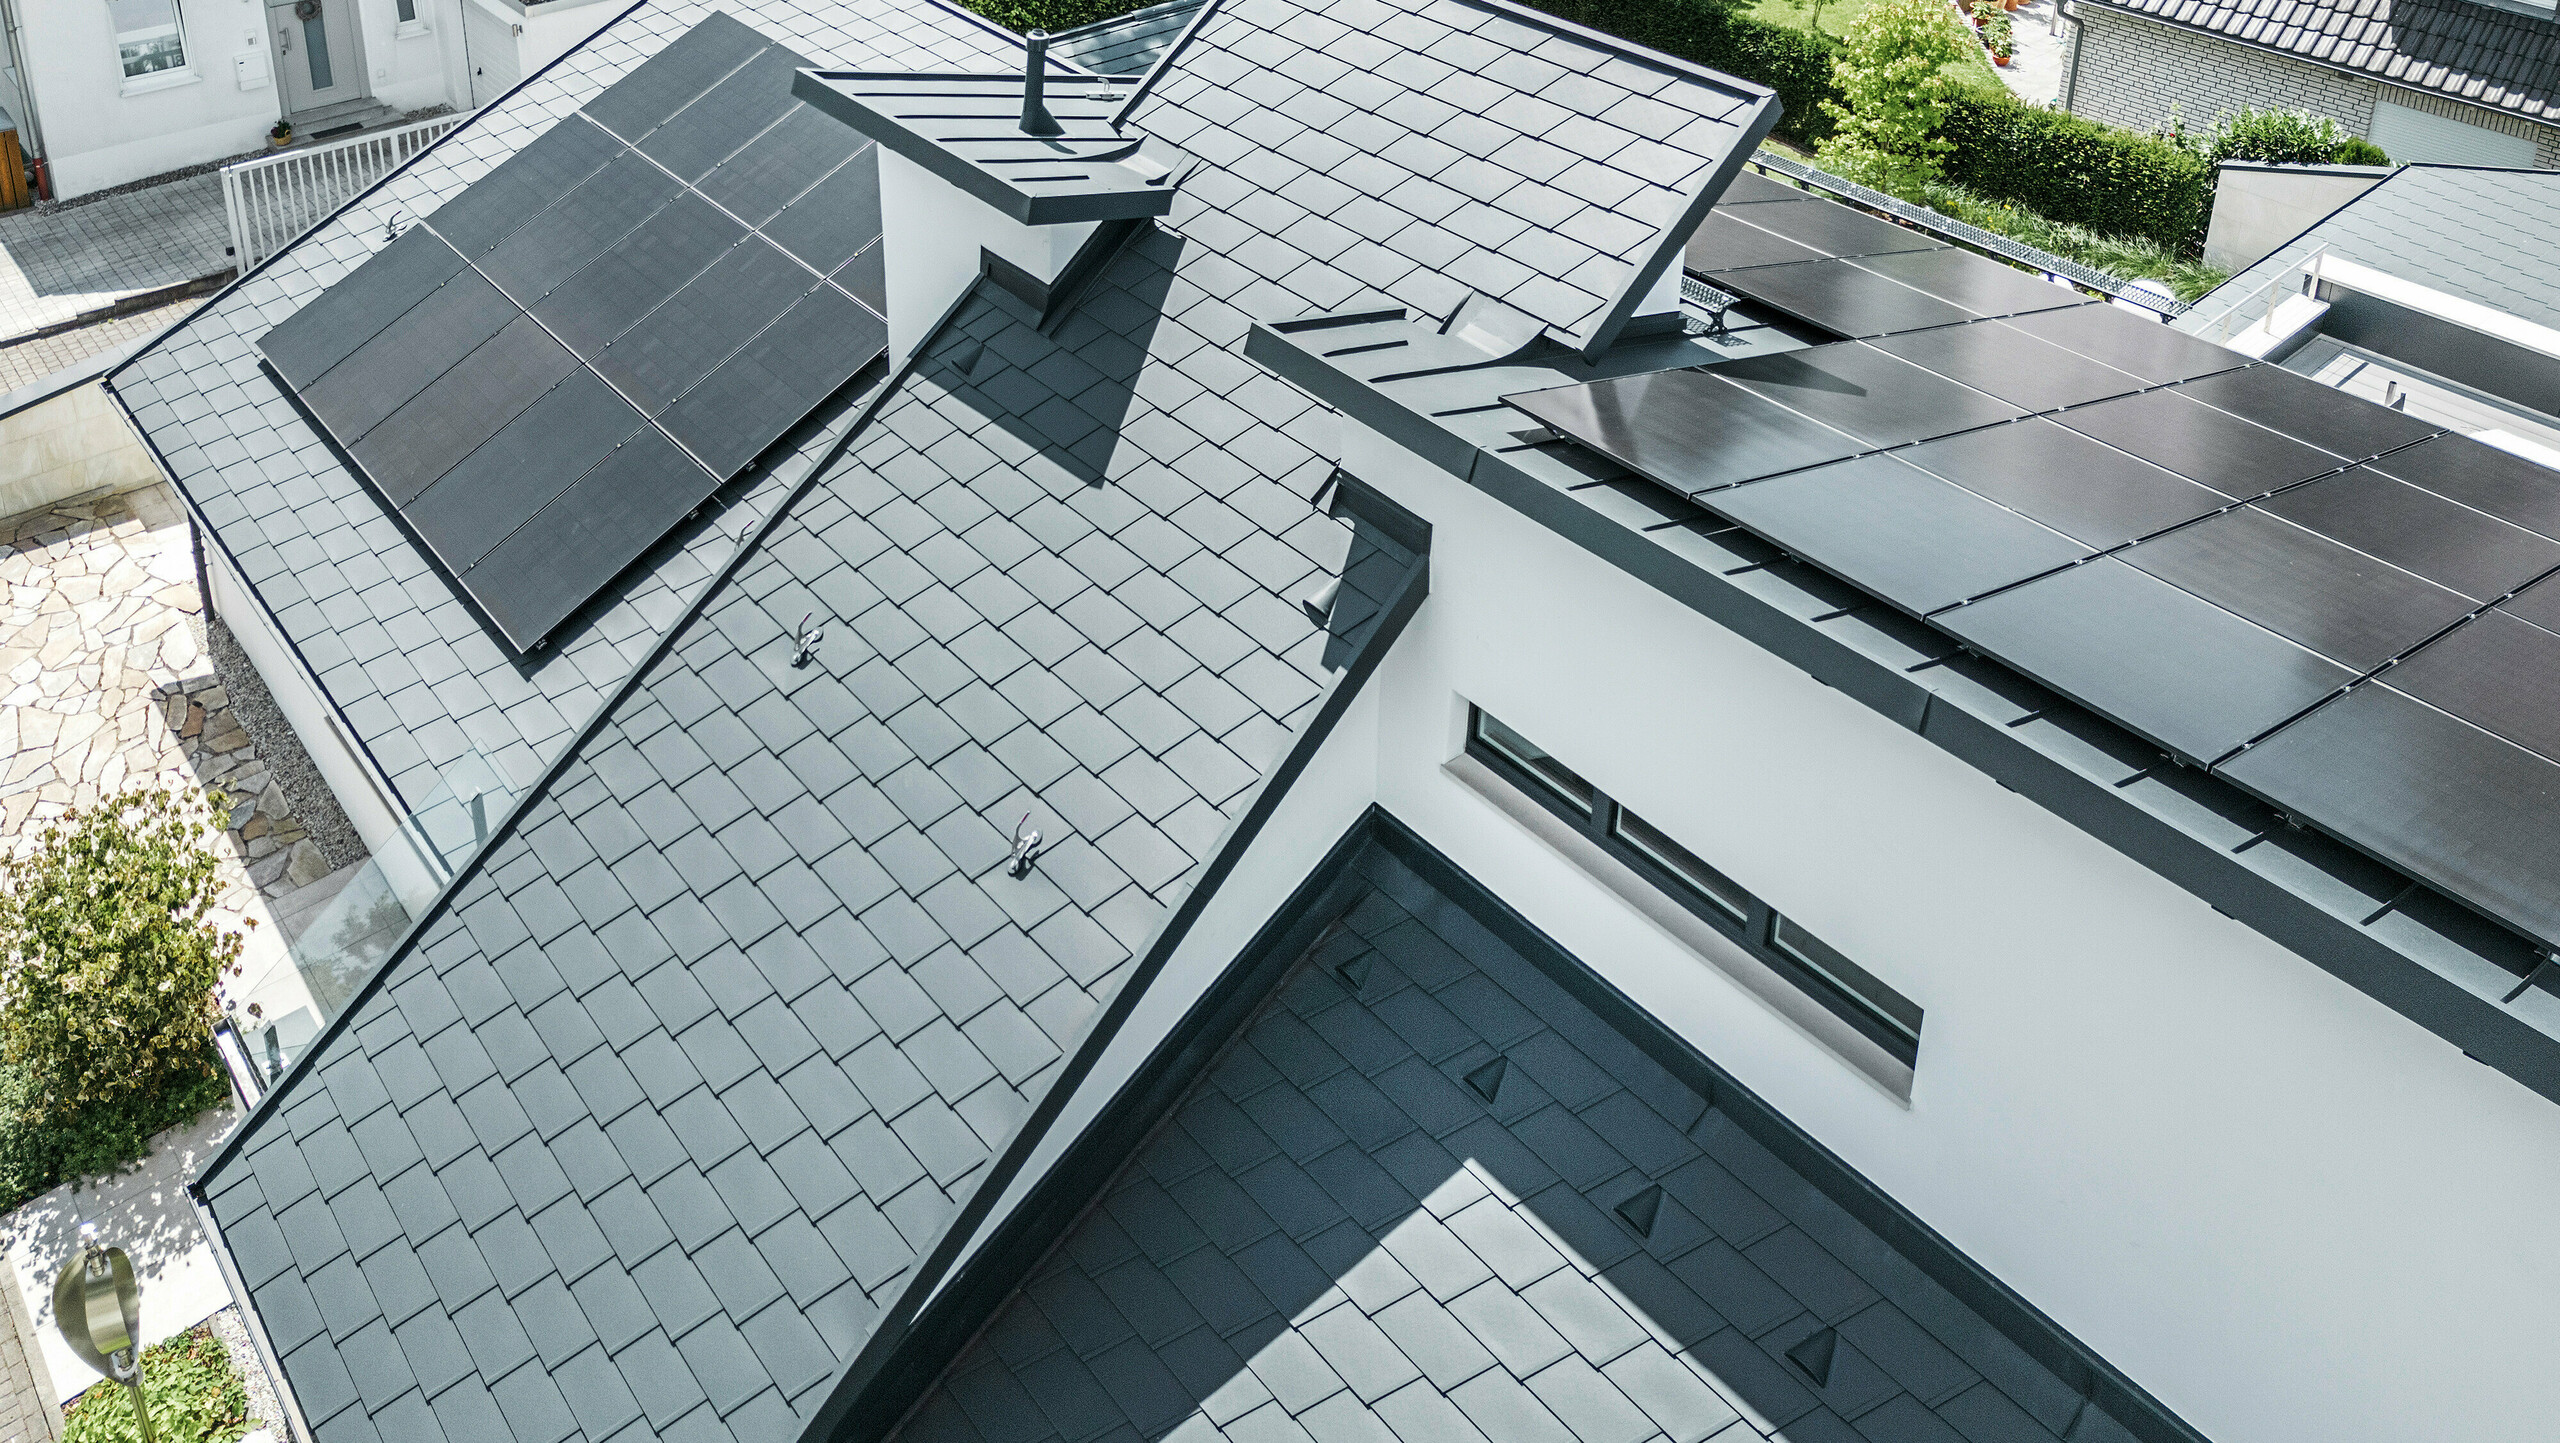 Modernes Einfamilienhaus in Dortmund mit einer fortschrittlichen Photovoltaikanlage, installiert auf einem PREFA Dachsystem bestehend aus Dachschindeln DS.19 und PREFALZ Stehfalzdeckung in der Farbe P.10 Anthrazit. Die PV-Anlage ist mittels Vario Solarhalter für die Dachschindeln und des PREFALZ Vario Solarhalter für die Stehfalzbahnen befestigt. Die Solaranlage gewährleistet eine effiziente Energieerzeugung aus erneuerbaren Energiequellen. Das durchdachte Dachdesign bietet eine optimale Balance zwischen Ästhetik und Funktionalität.